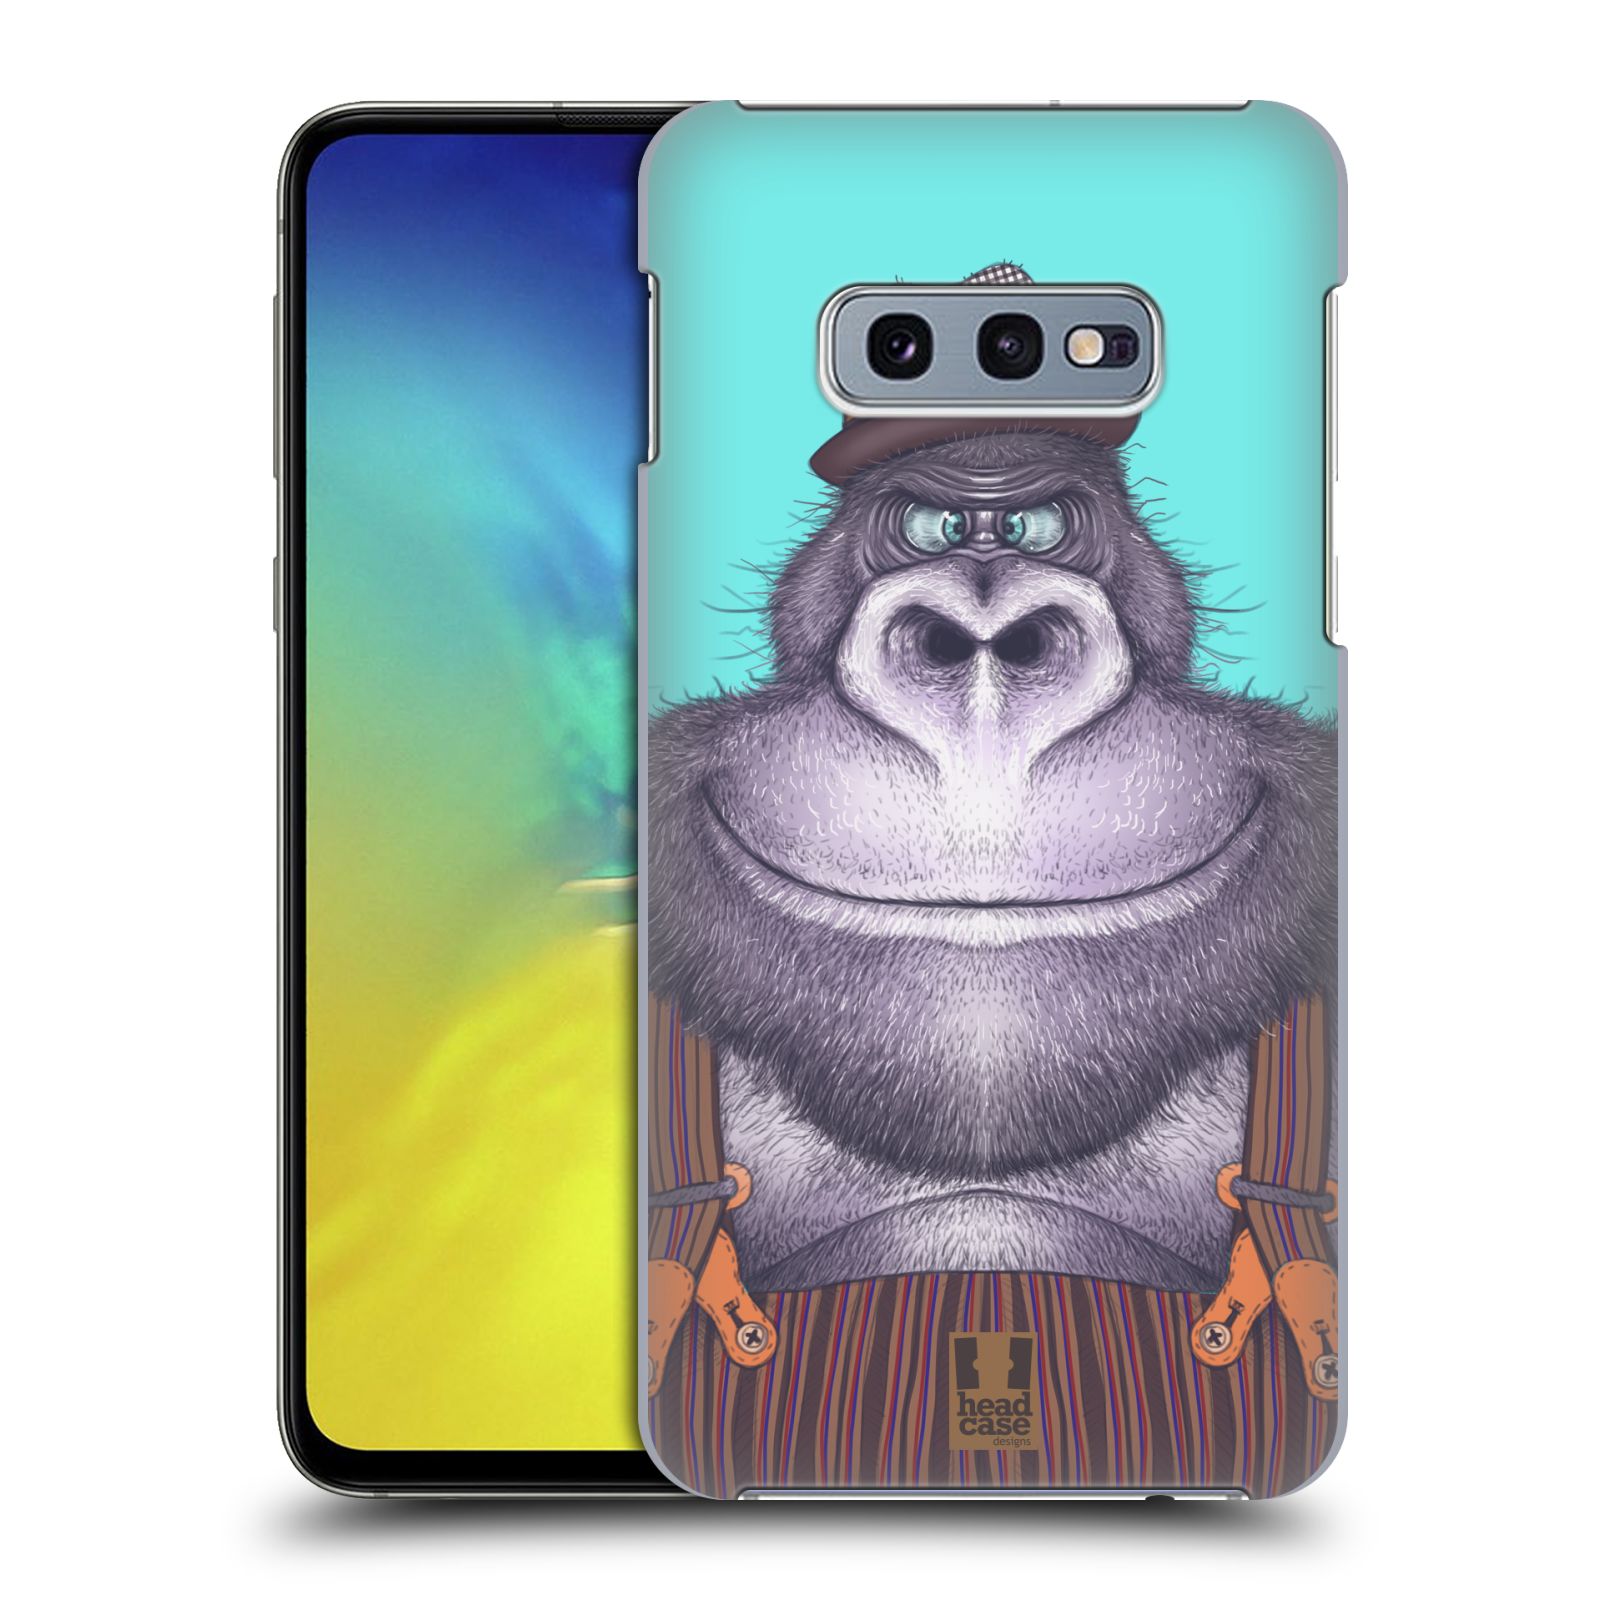 Pouzdro na mobil Samsung Galaxy S10e - HEAD CASE - vzor Kreslená zvířátka gorila